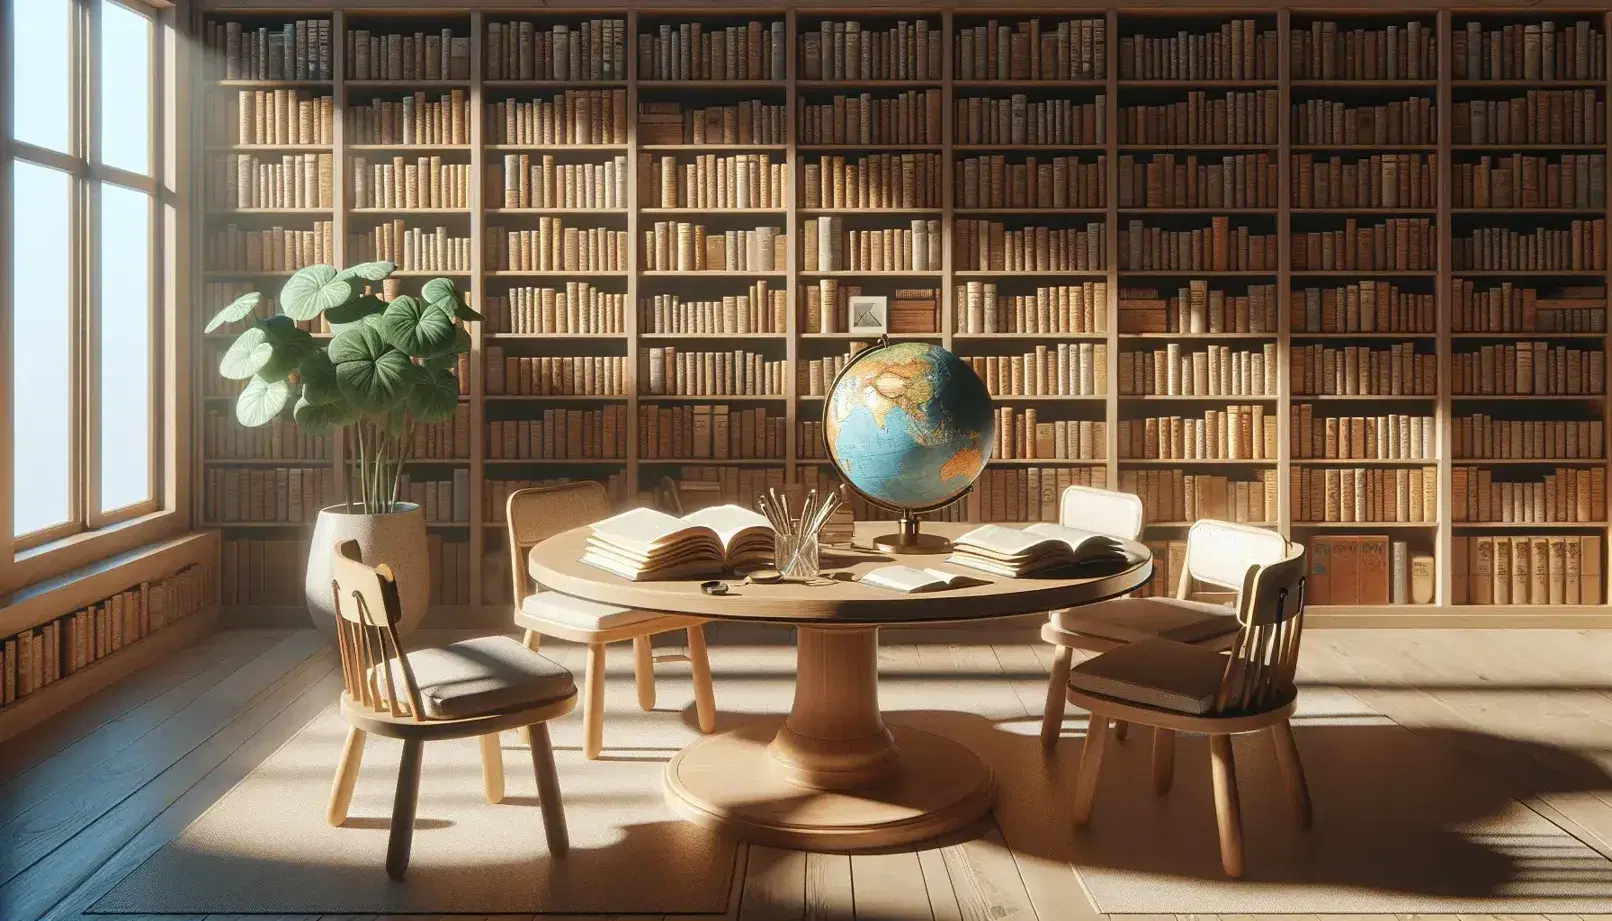 Biblioteca acogedora con estanterías de madera llenas de libros, mesa central con libros abiertos, lupa y globo terráqueo, y planta decorativa.